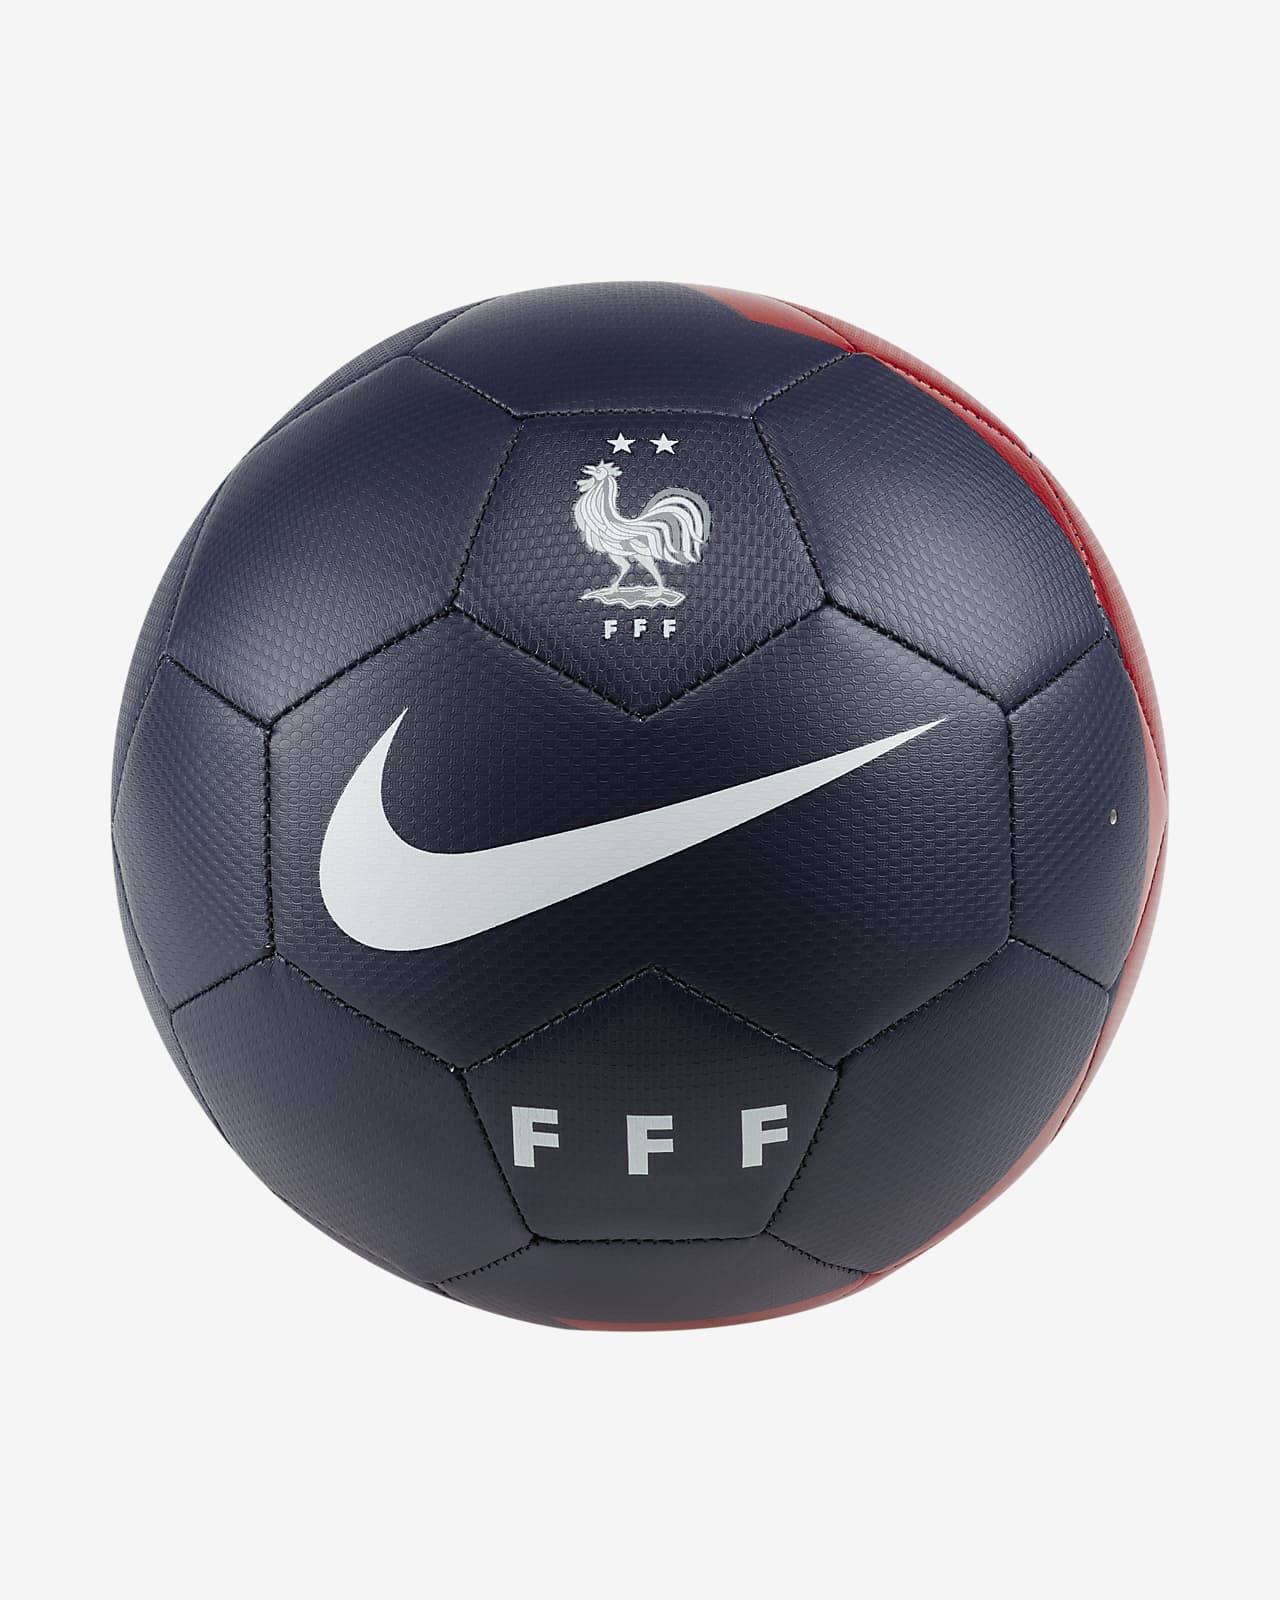 Nike公式 Fff プレスティージ サッカーボール オンラインストア 通販サイト